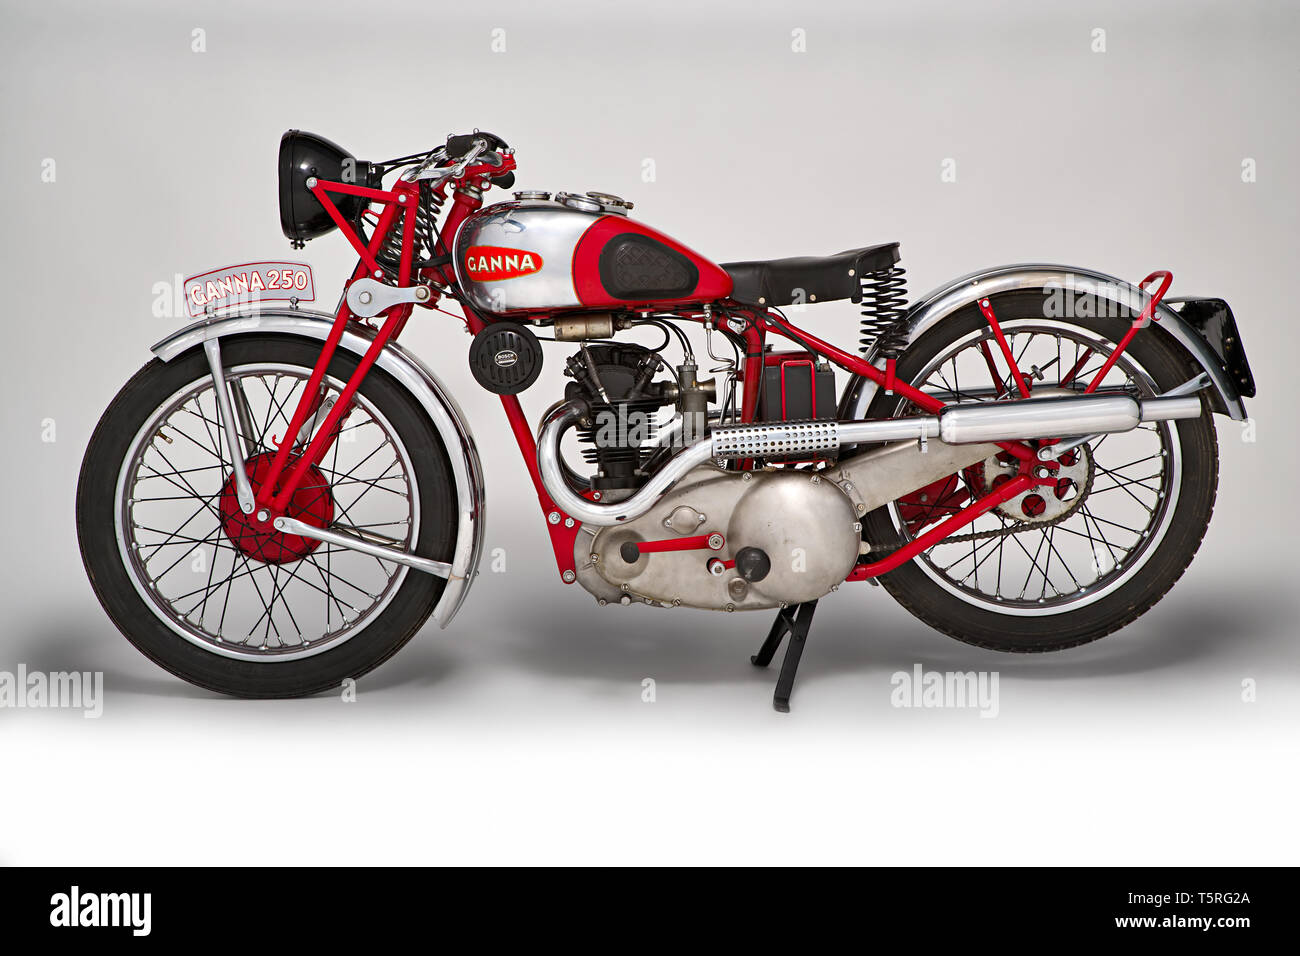 Moto d'Epoca Ganna 250 cc. Marca: Ganna modello: 250 cc nazione: Italia - Varese anno: 1935 condizioni: restaurata cilindrata: 249 (al. Foto de stock